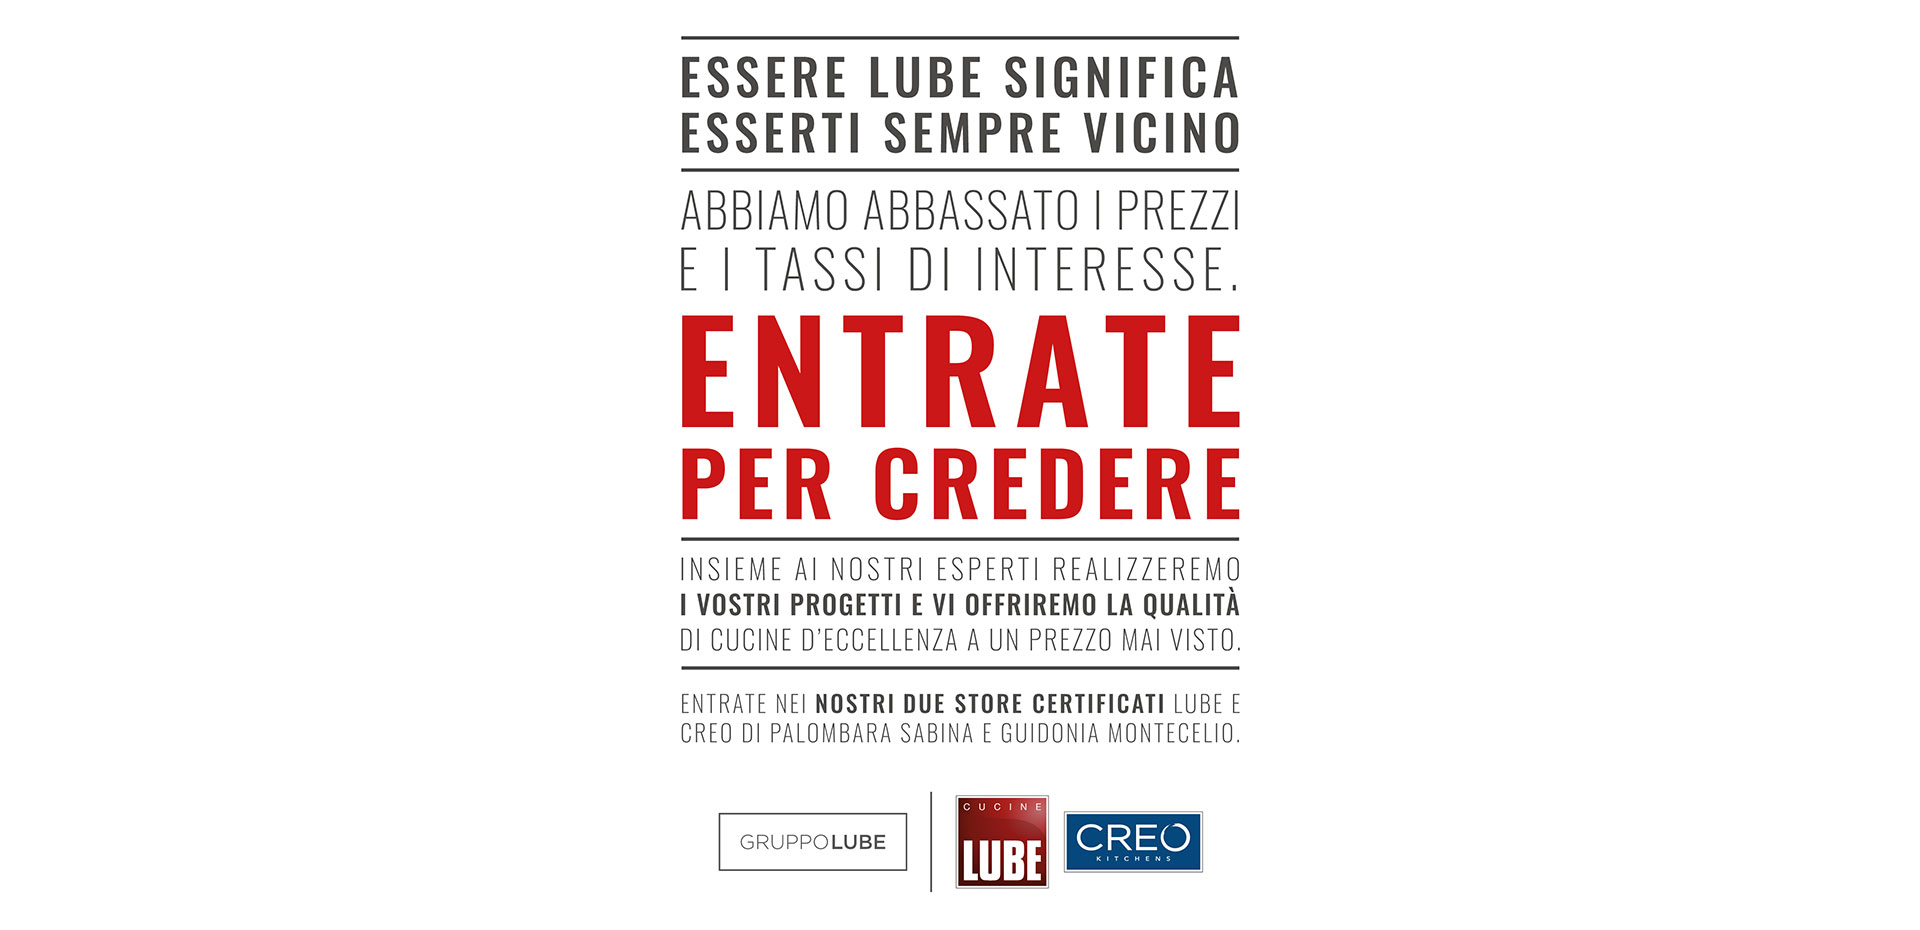 Abbiamo deciso di abbassare i prezzi e i tassi di interesse! Approfitta della promozione sui modelli Cucine LUBE - LUBE CREO Palombara Sabina (Roma)